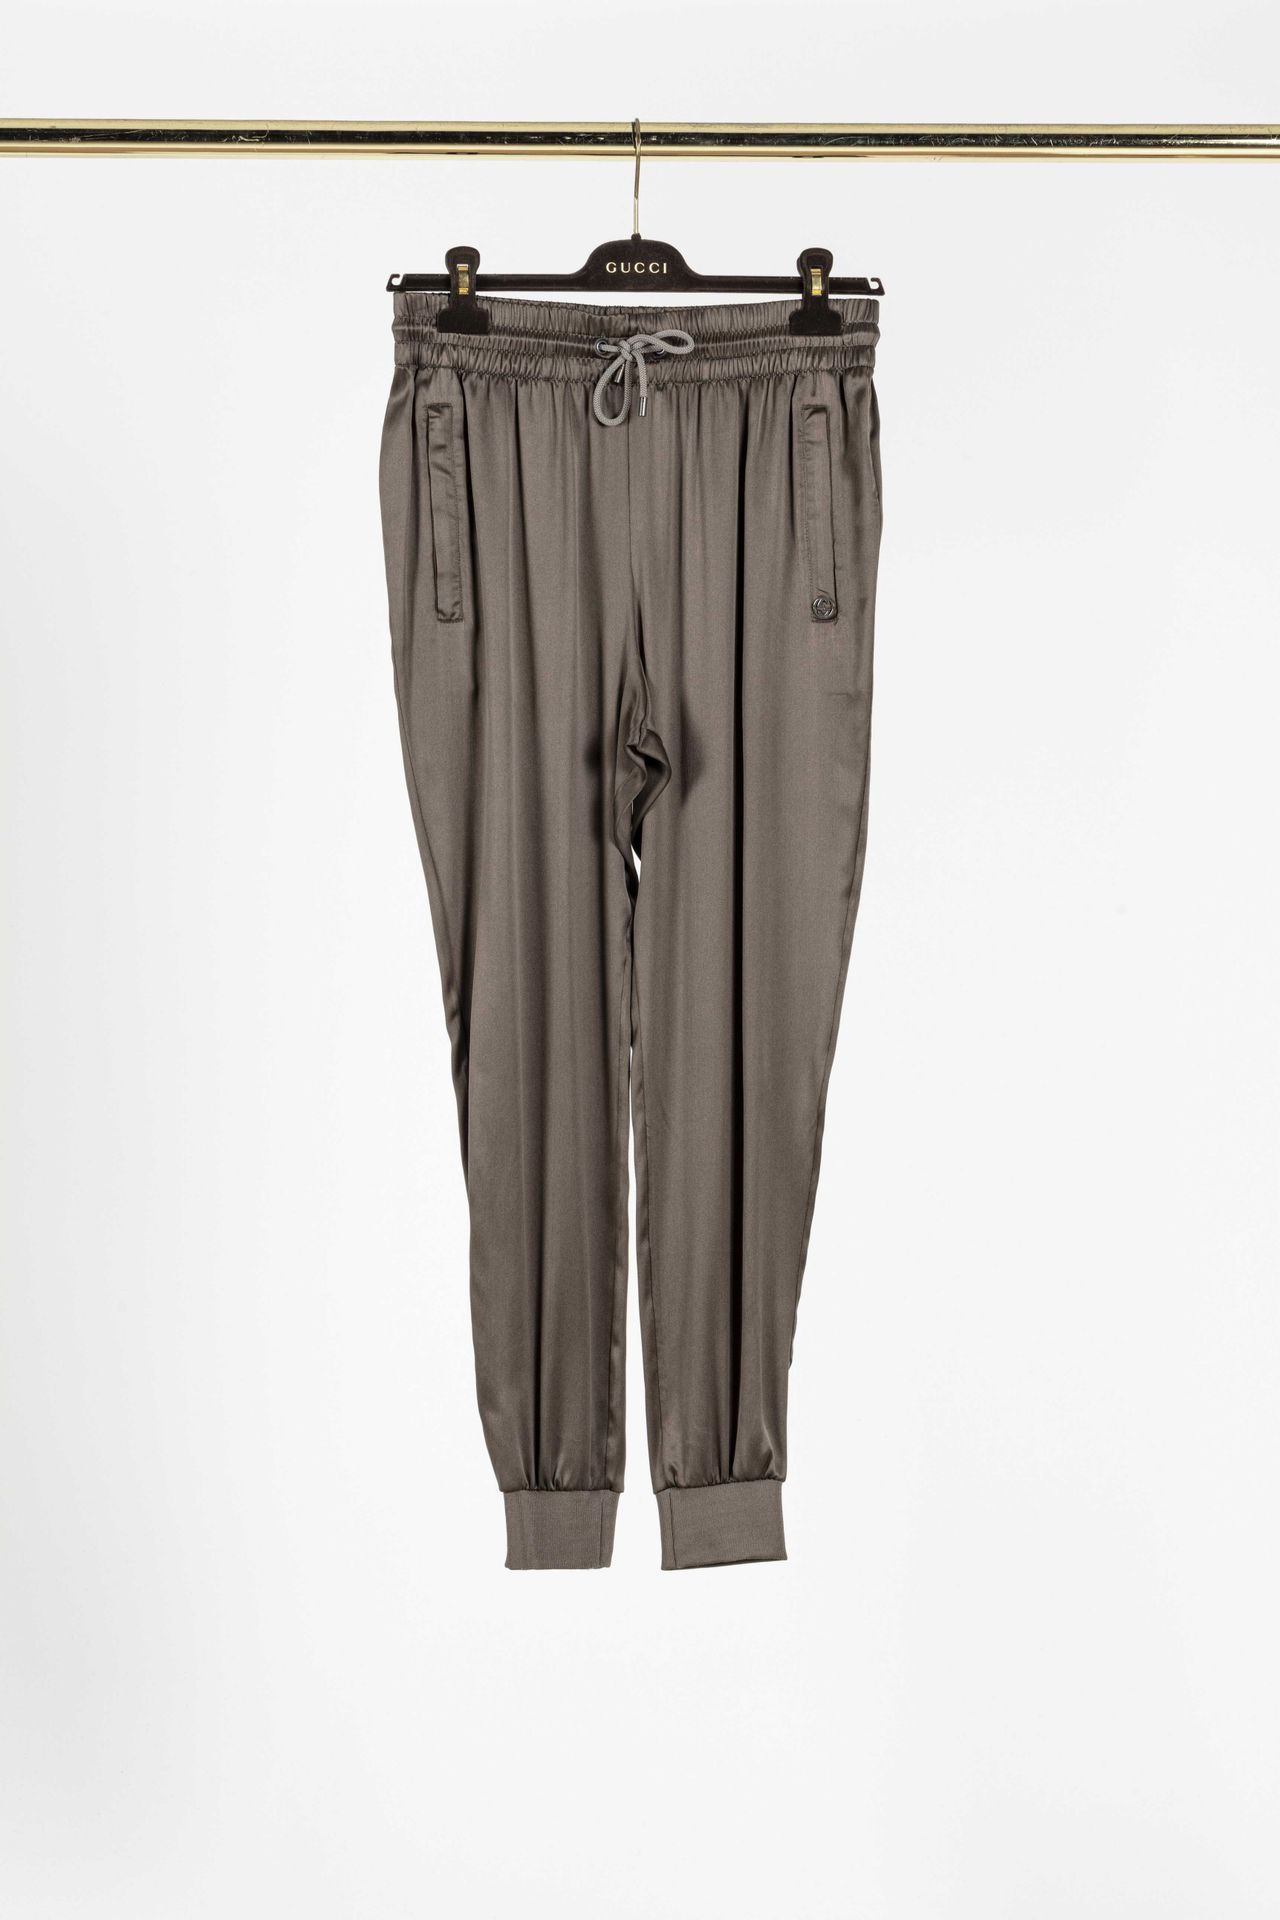 Null GUCCI : pantalon sportswear en soie bronze, se ressert à la taille par un l&hellip;